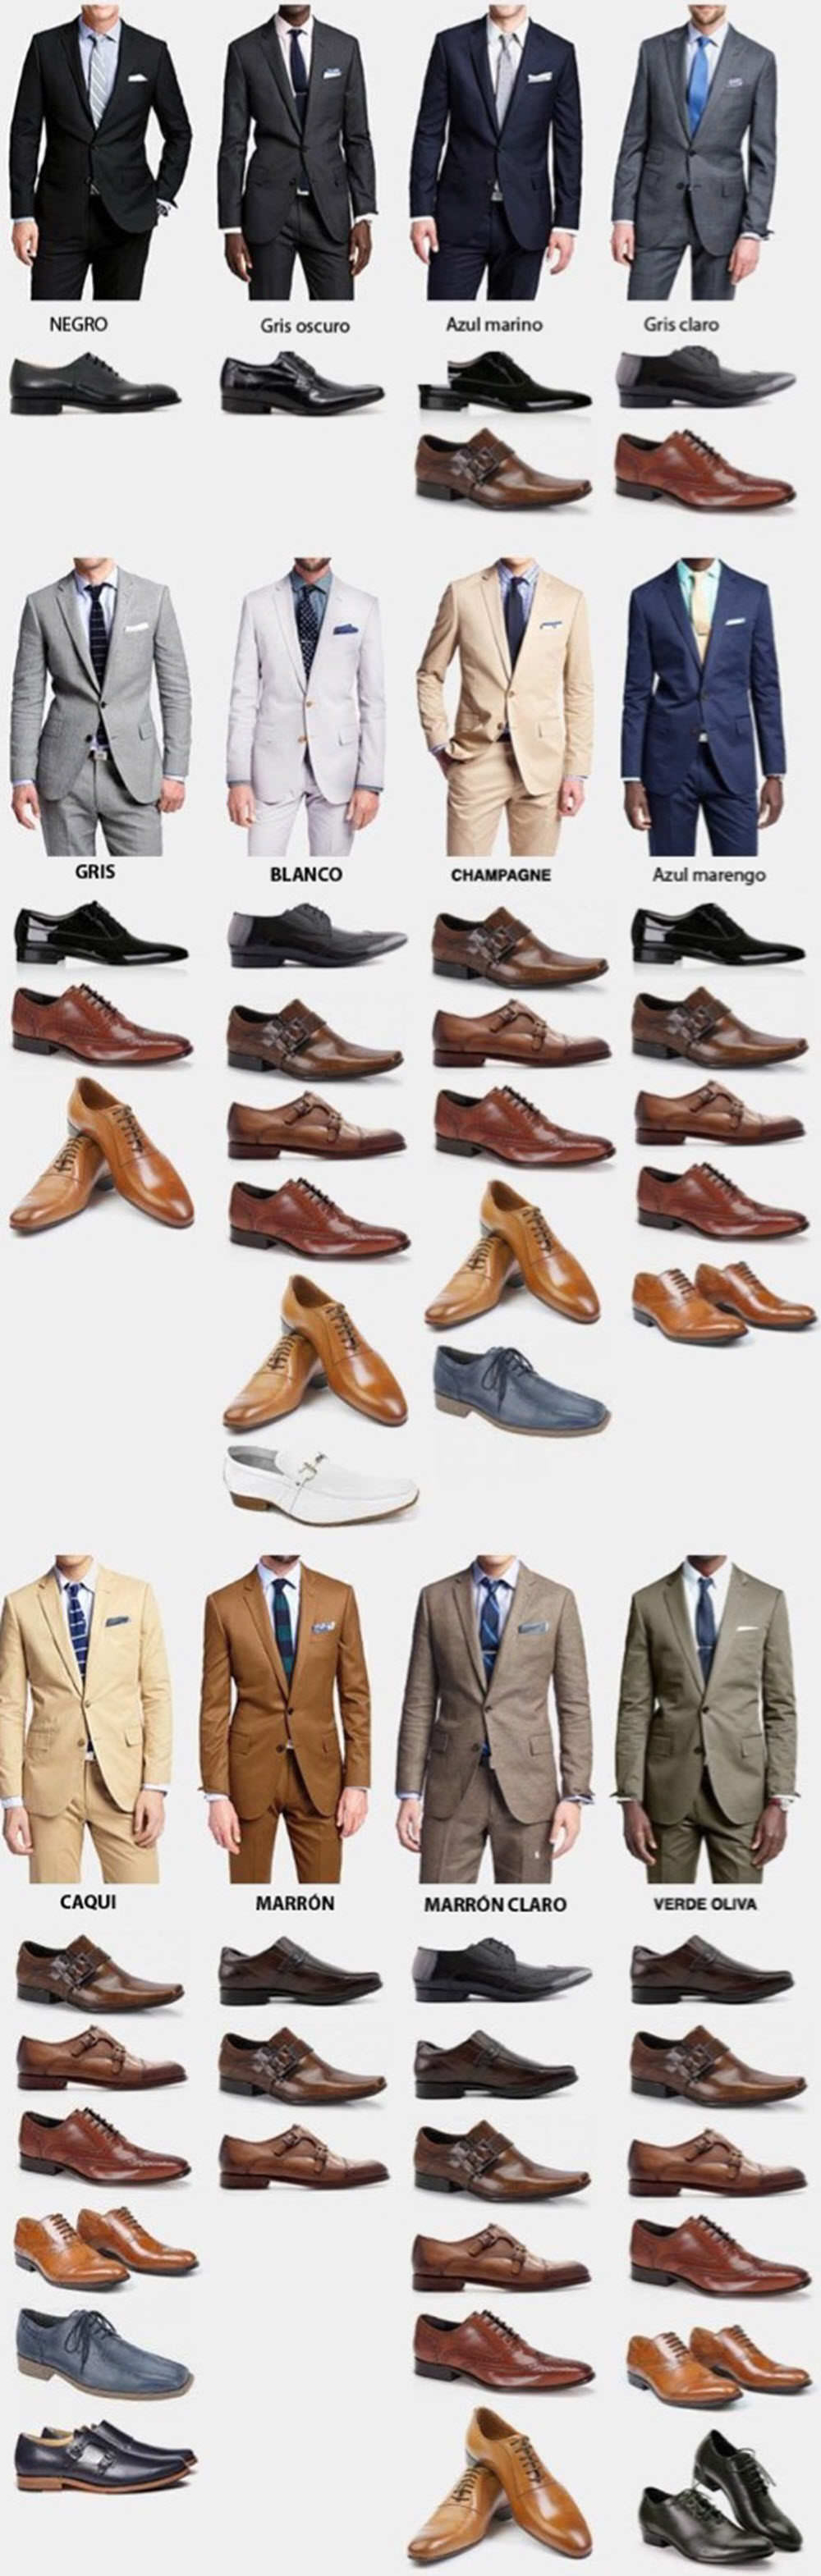 guia estilo hombre visual como elegir conjuntar zapatos